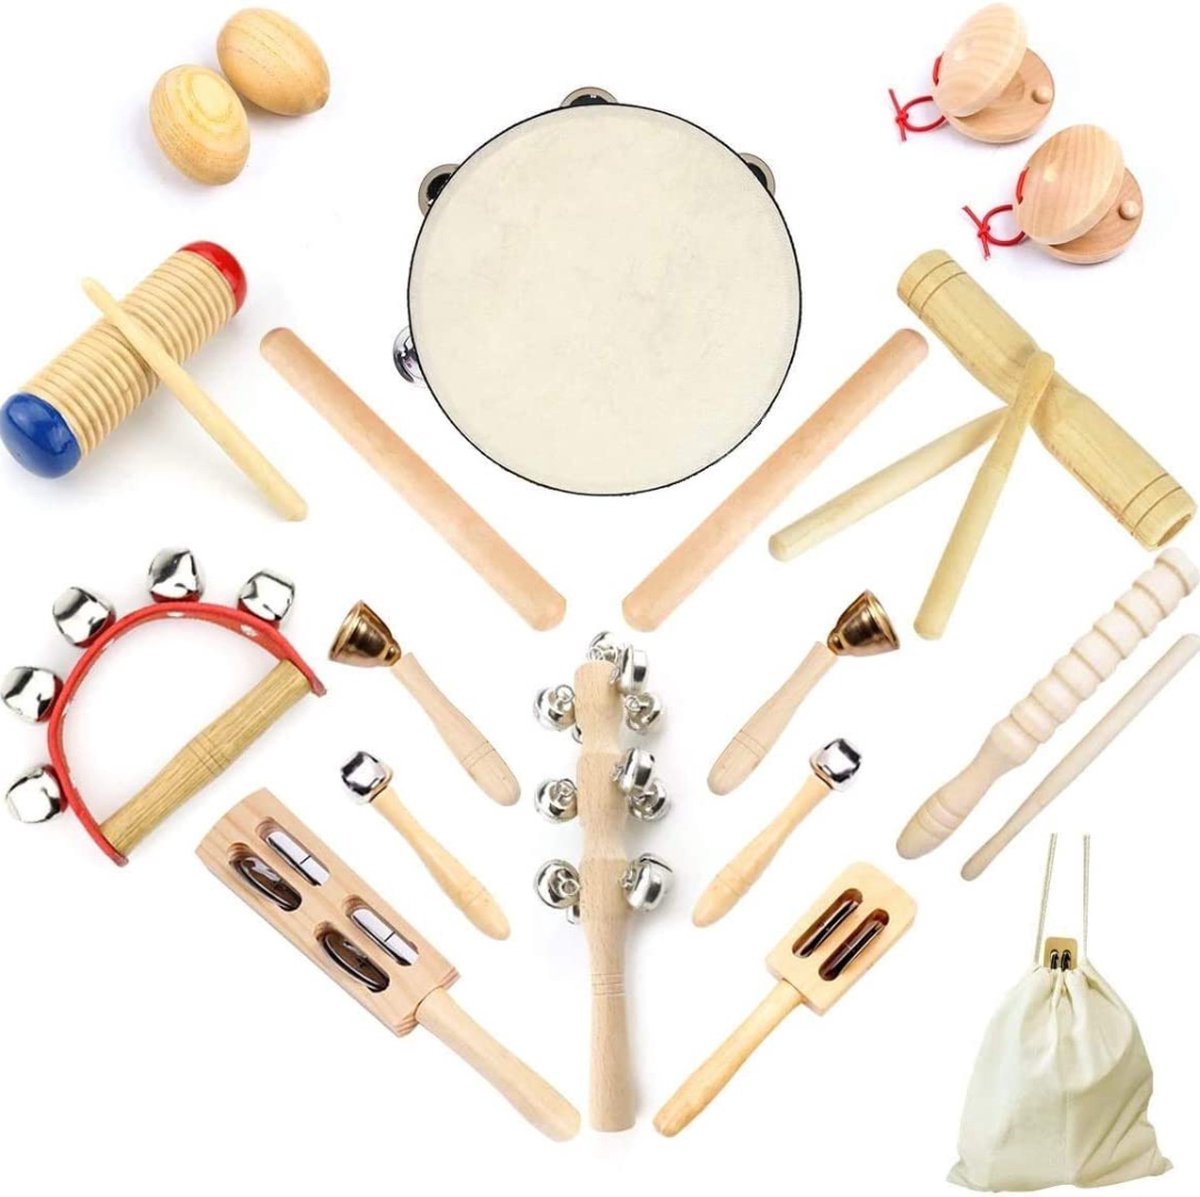 Jouet éducatif en bois, instruments musicaux pour enfants, bâtons